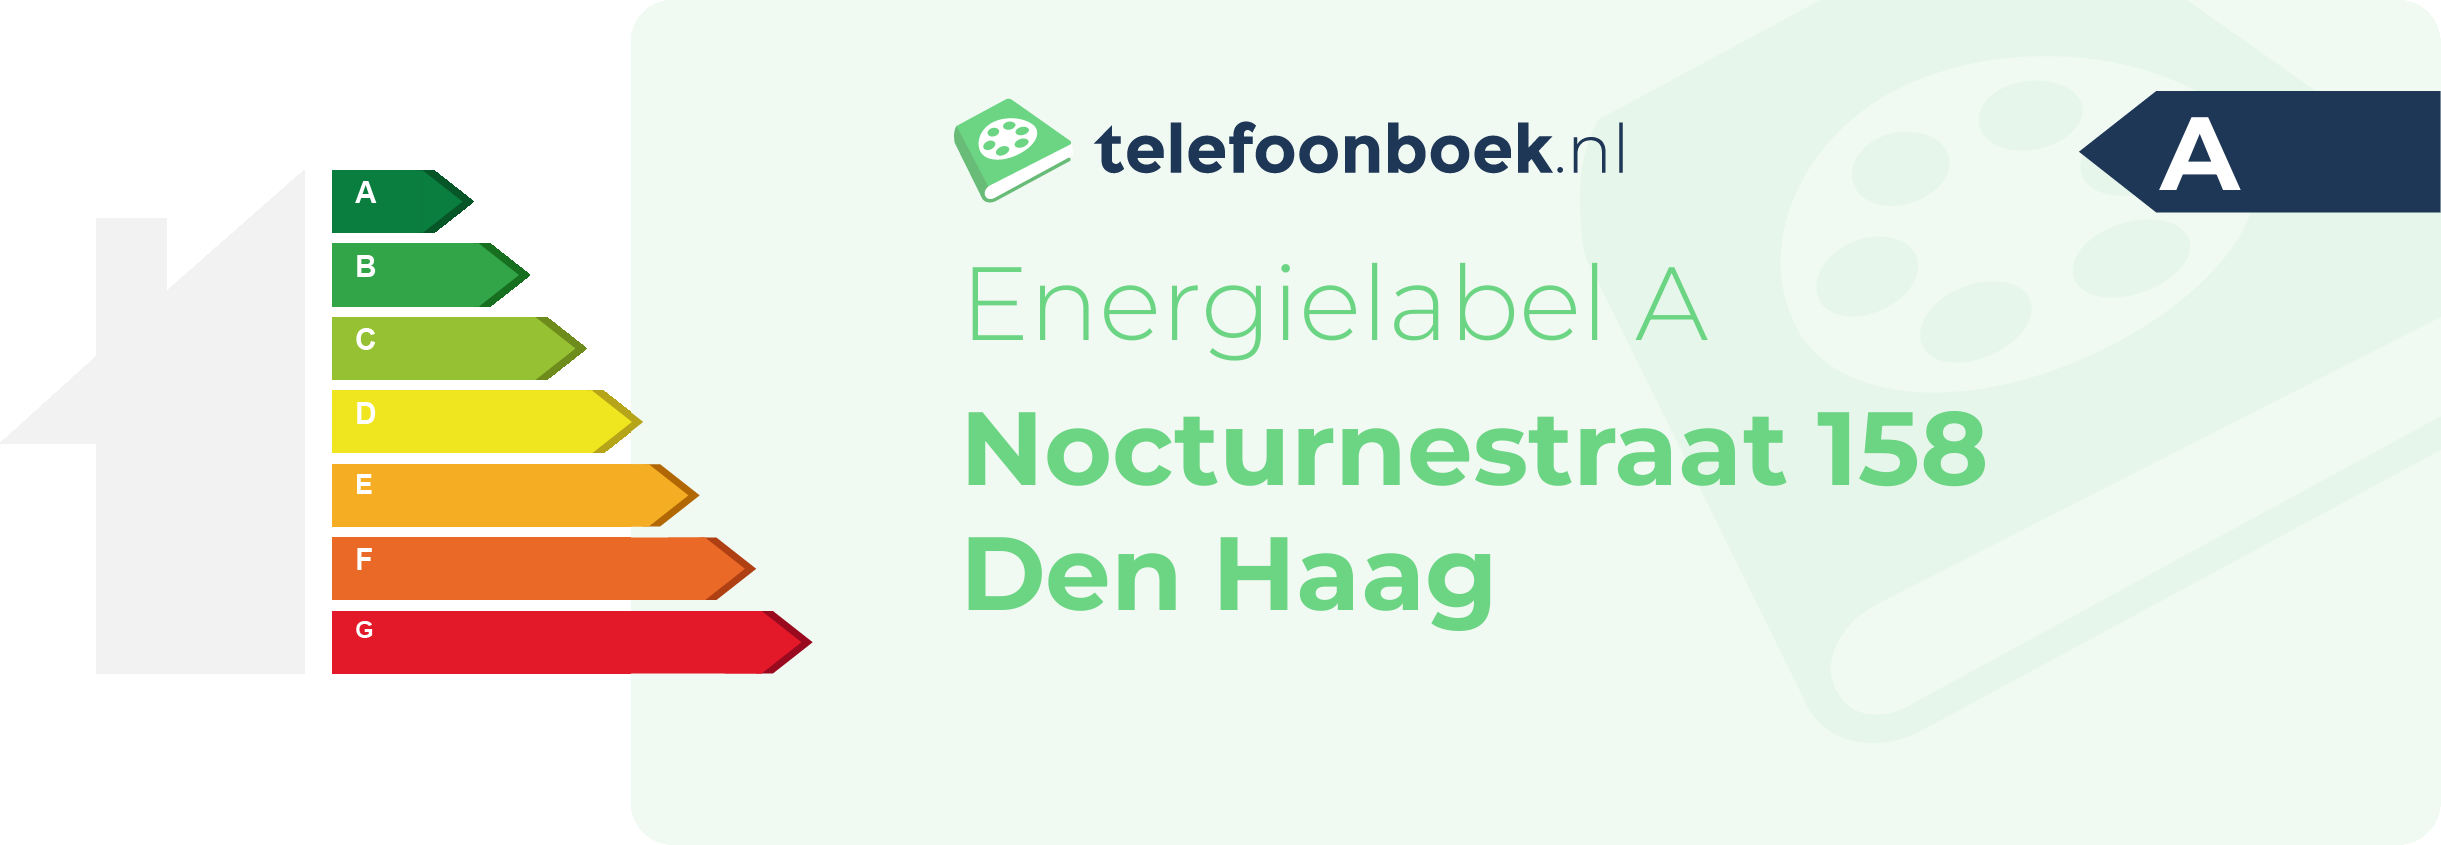 Energielabel Nocturnestraat 158 Den Haag